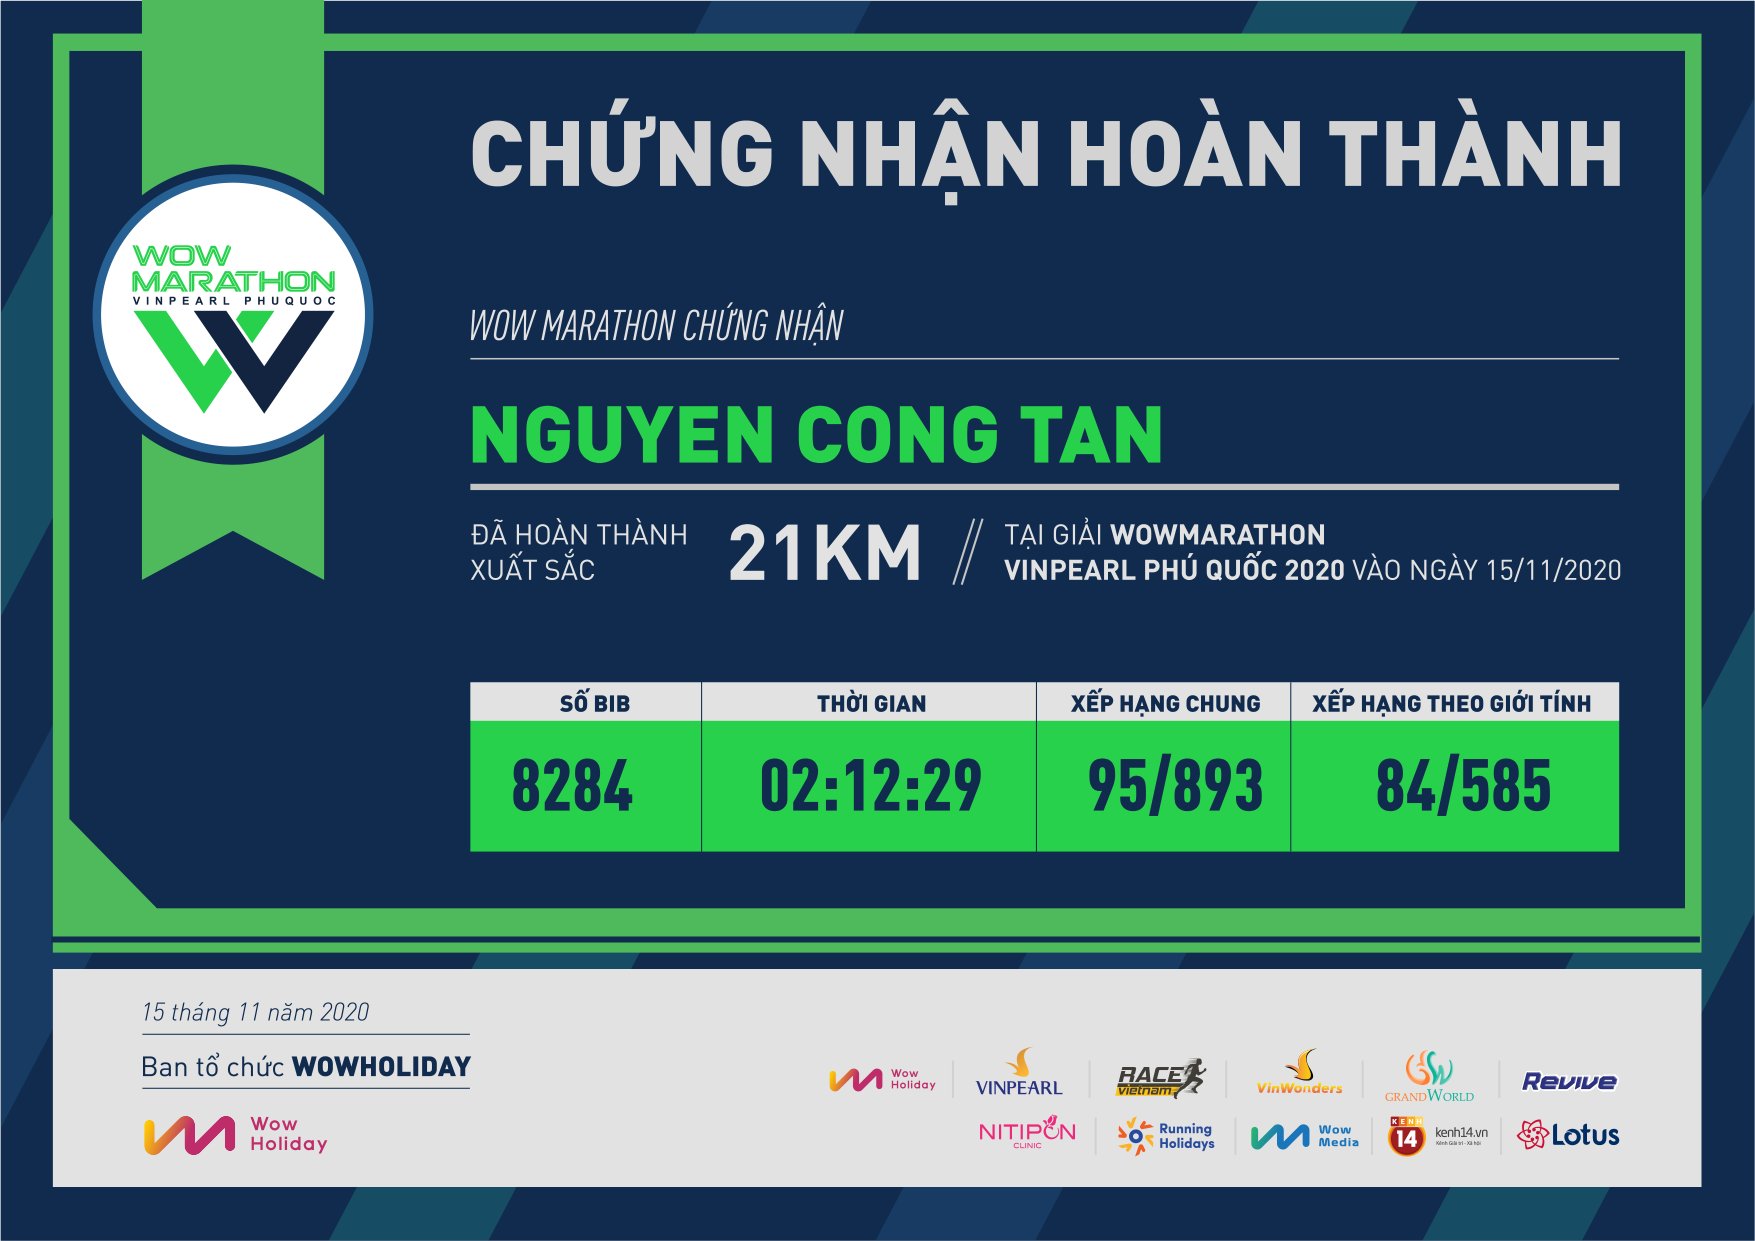 8284 - Nguyen Cong Tan